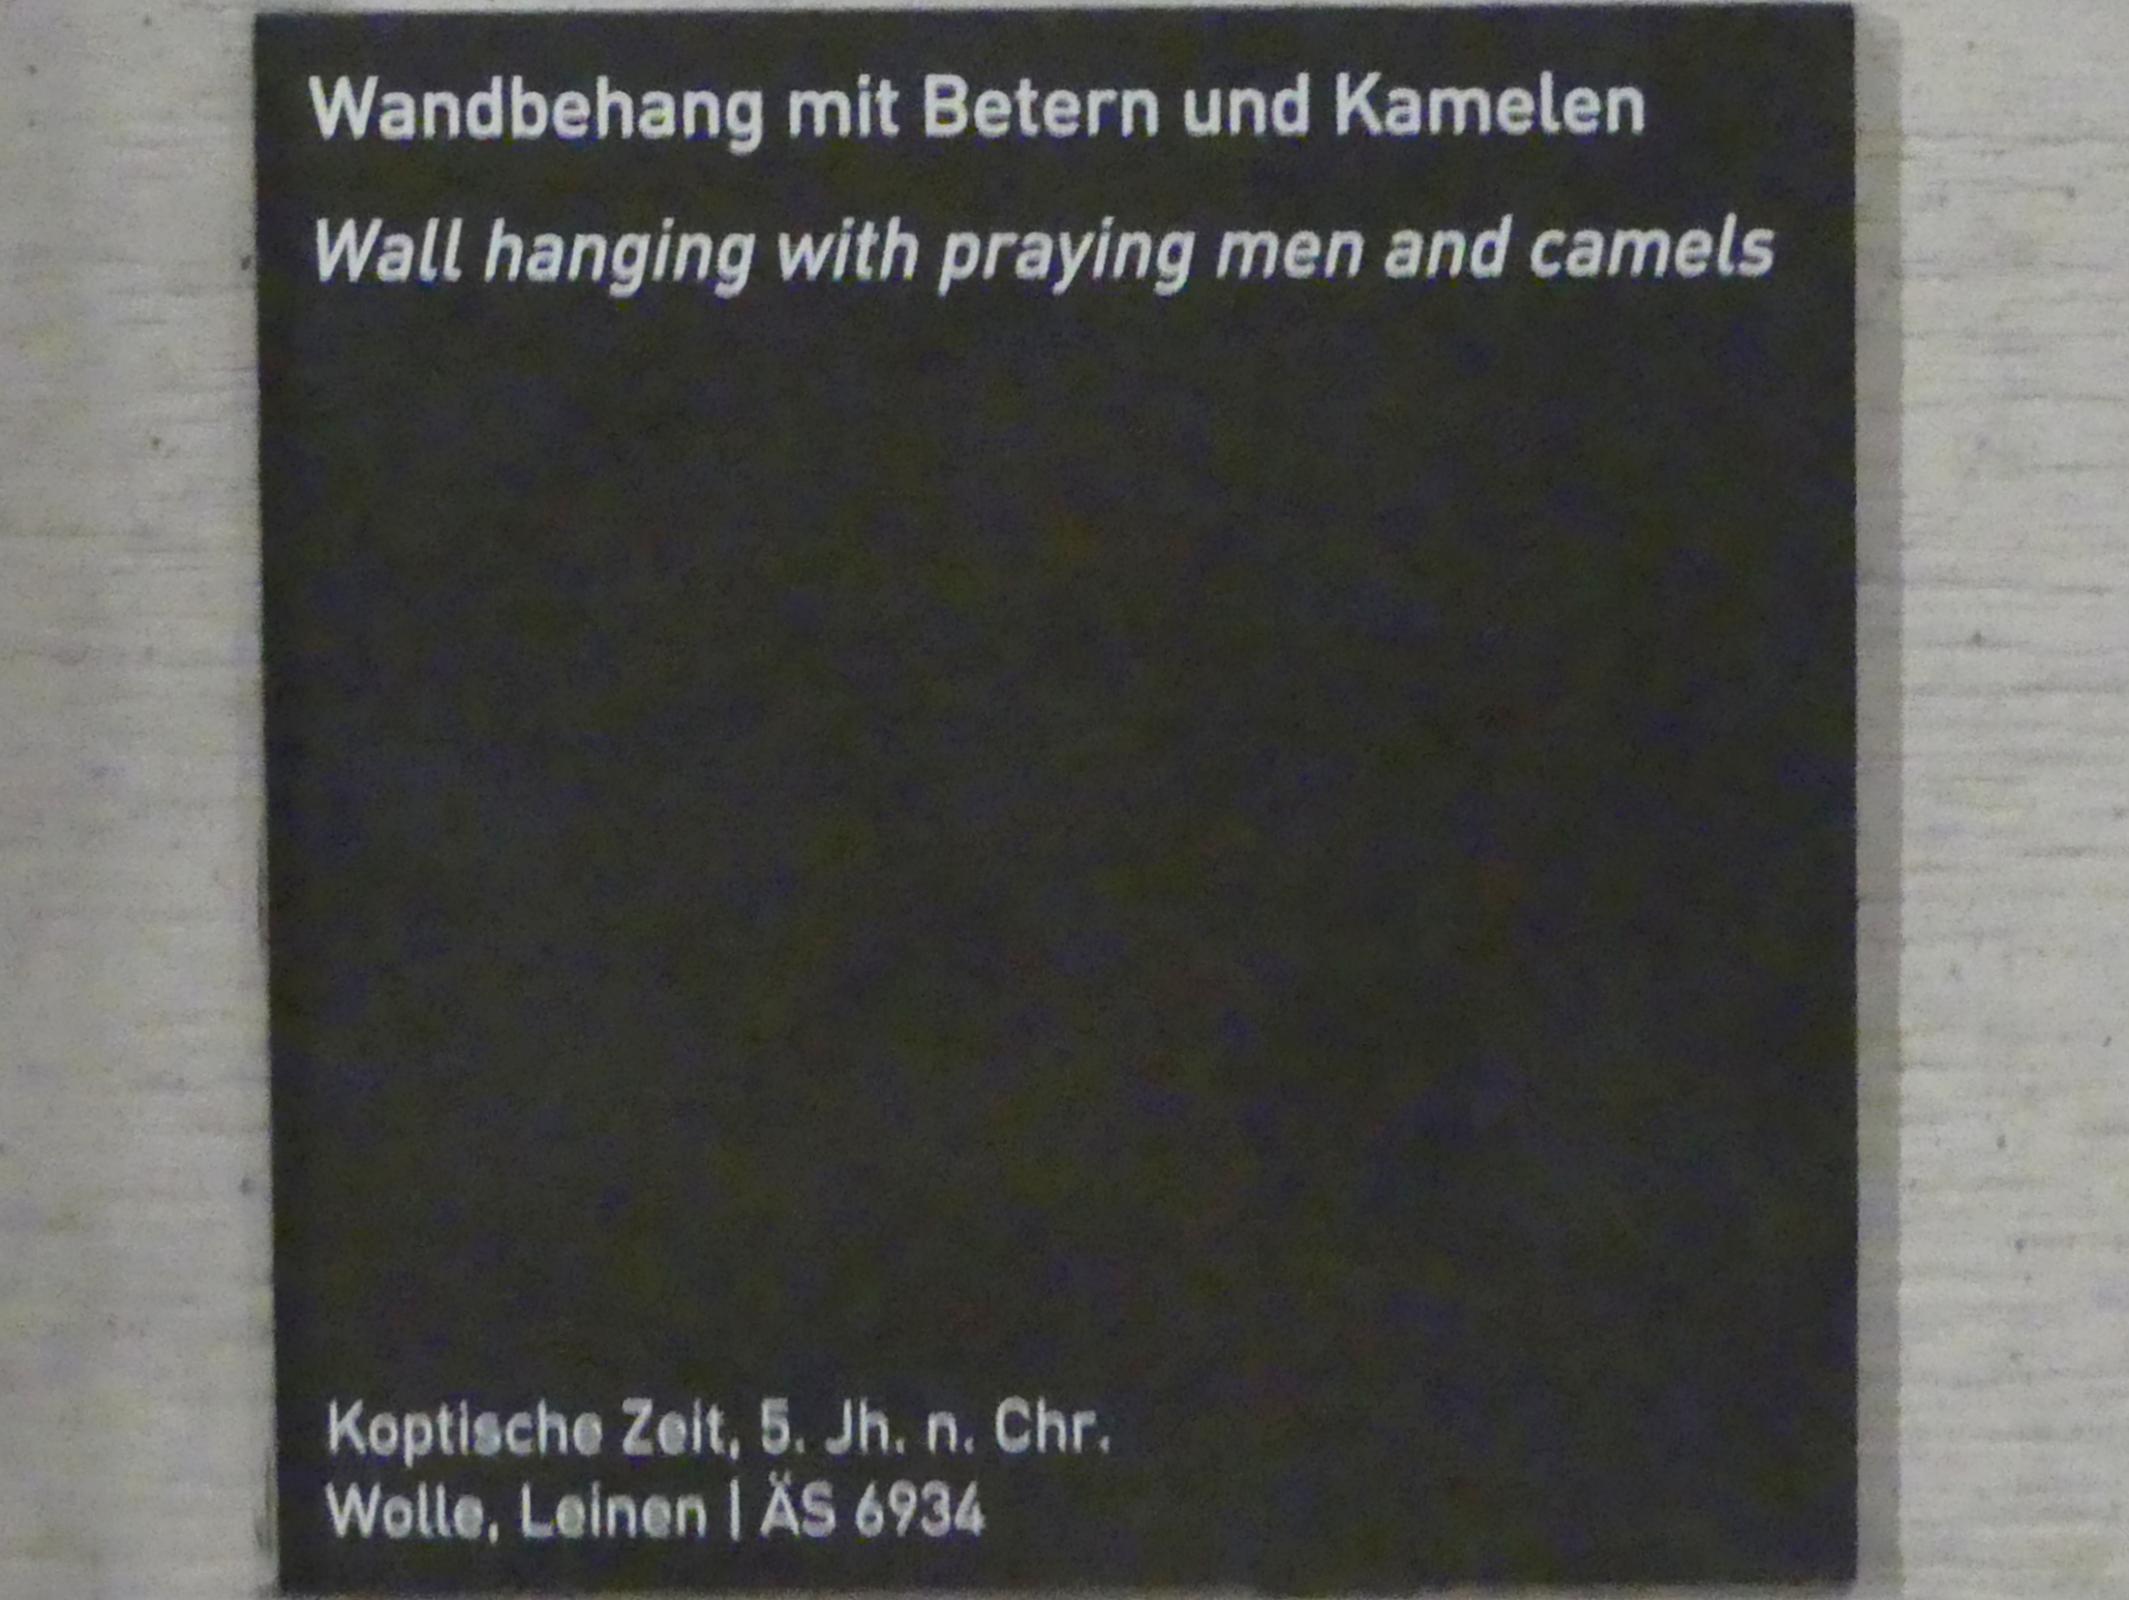 Wandbehang mit Betern und Kamelen, Koptische Zeit, 200 - 800, 400 - 500, Bild 3/3